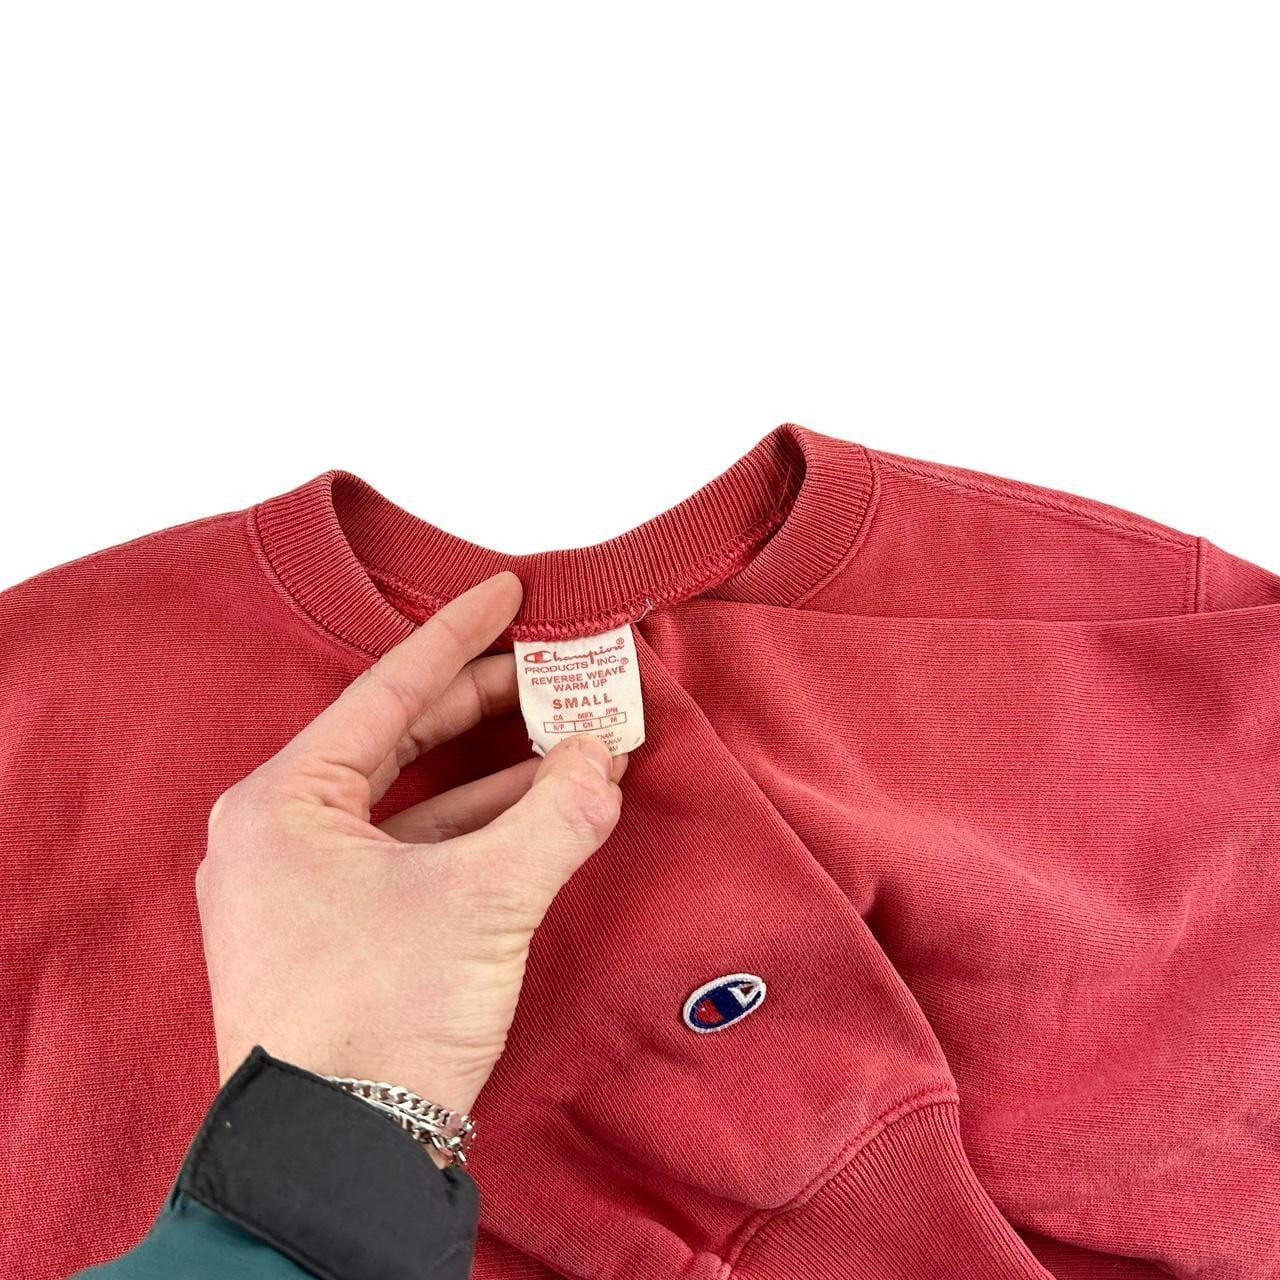 Vintage Champion logo jumper sweatshirt size S - Known Source